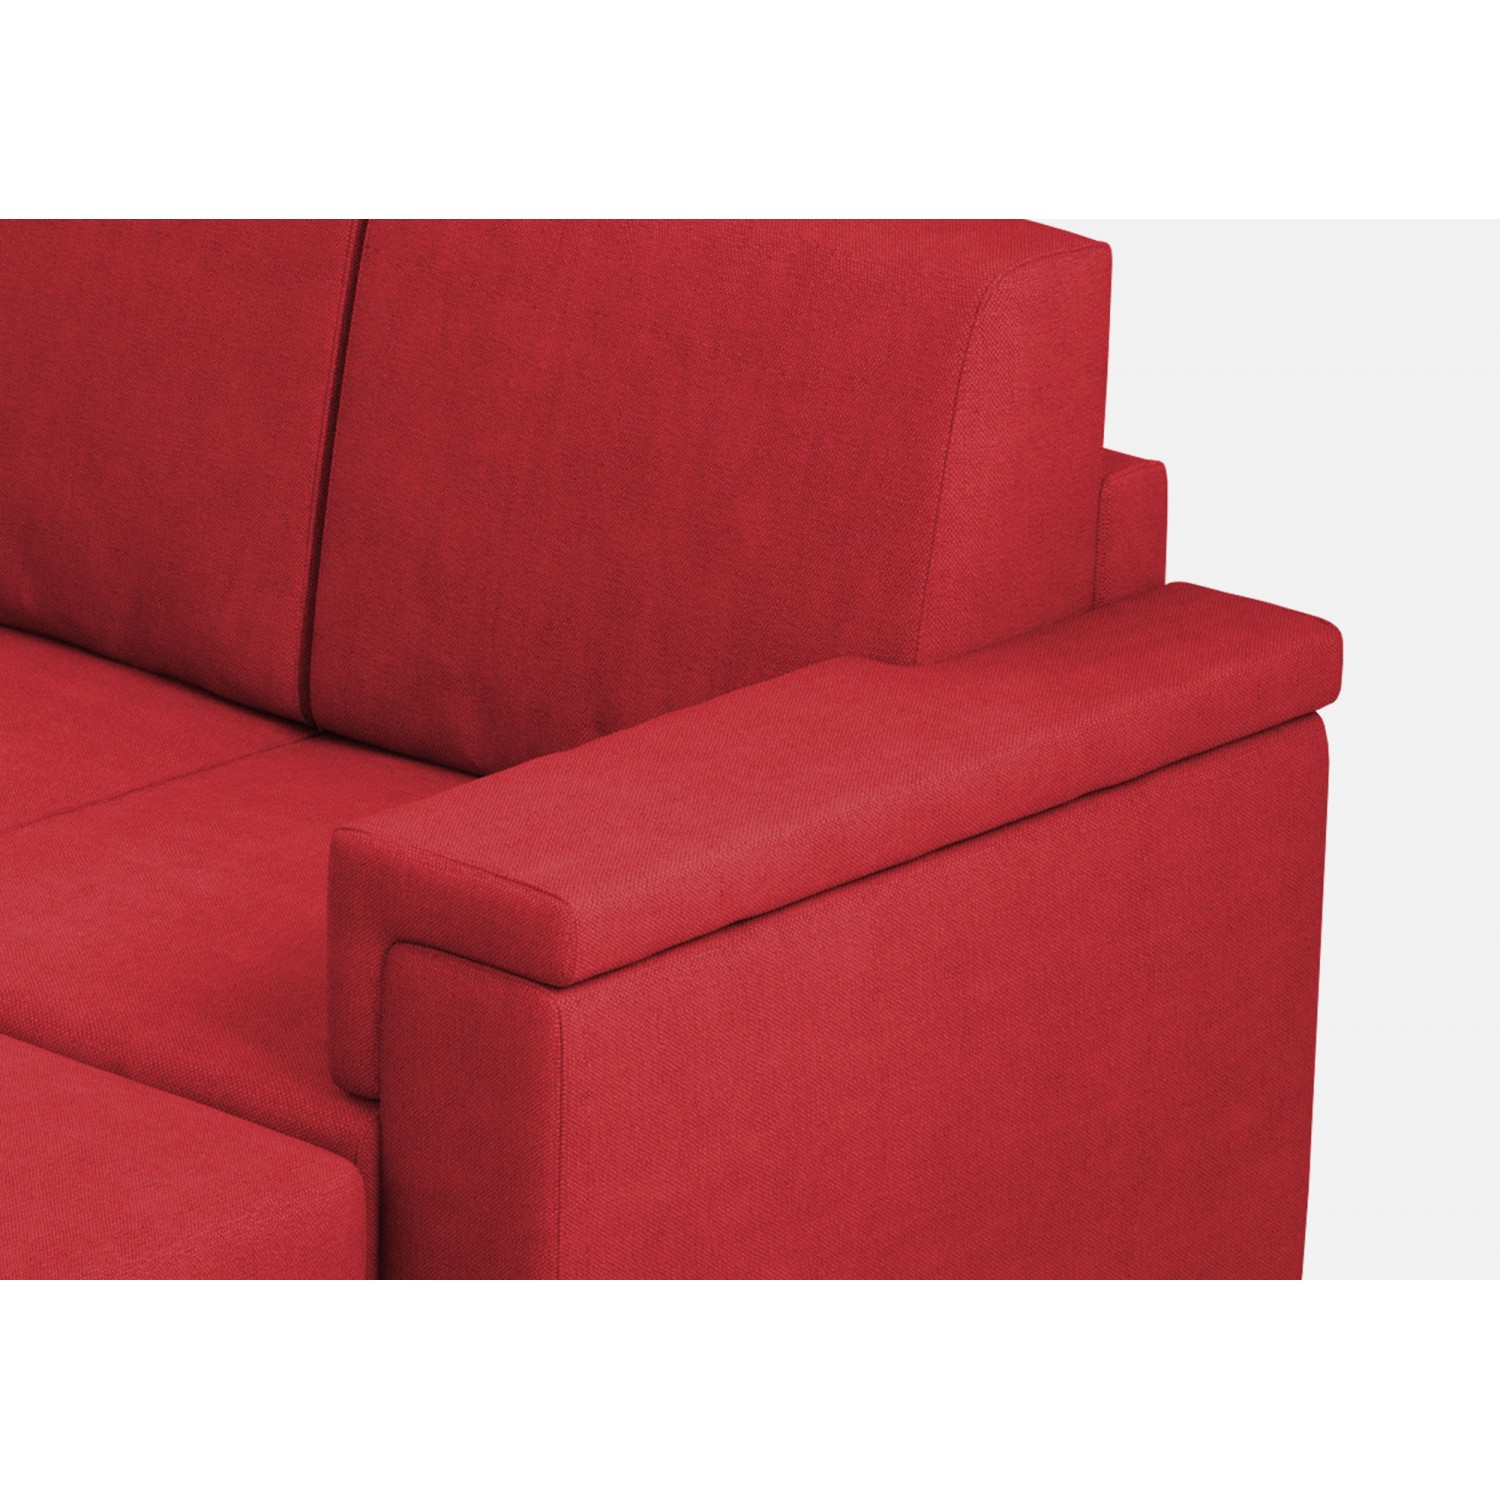 Ityhome Divano Marrak 2 posti (due sedute da 60cm) + pouf misure esterne L.148 P.155 colore rosso